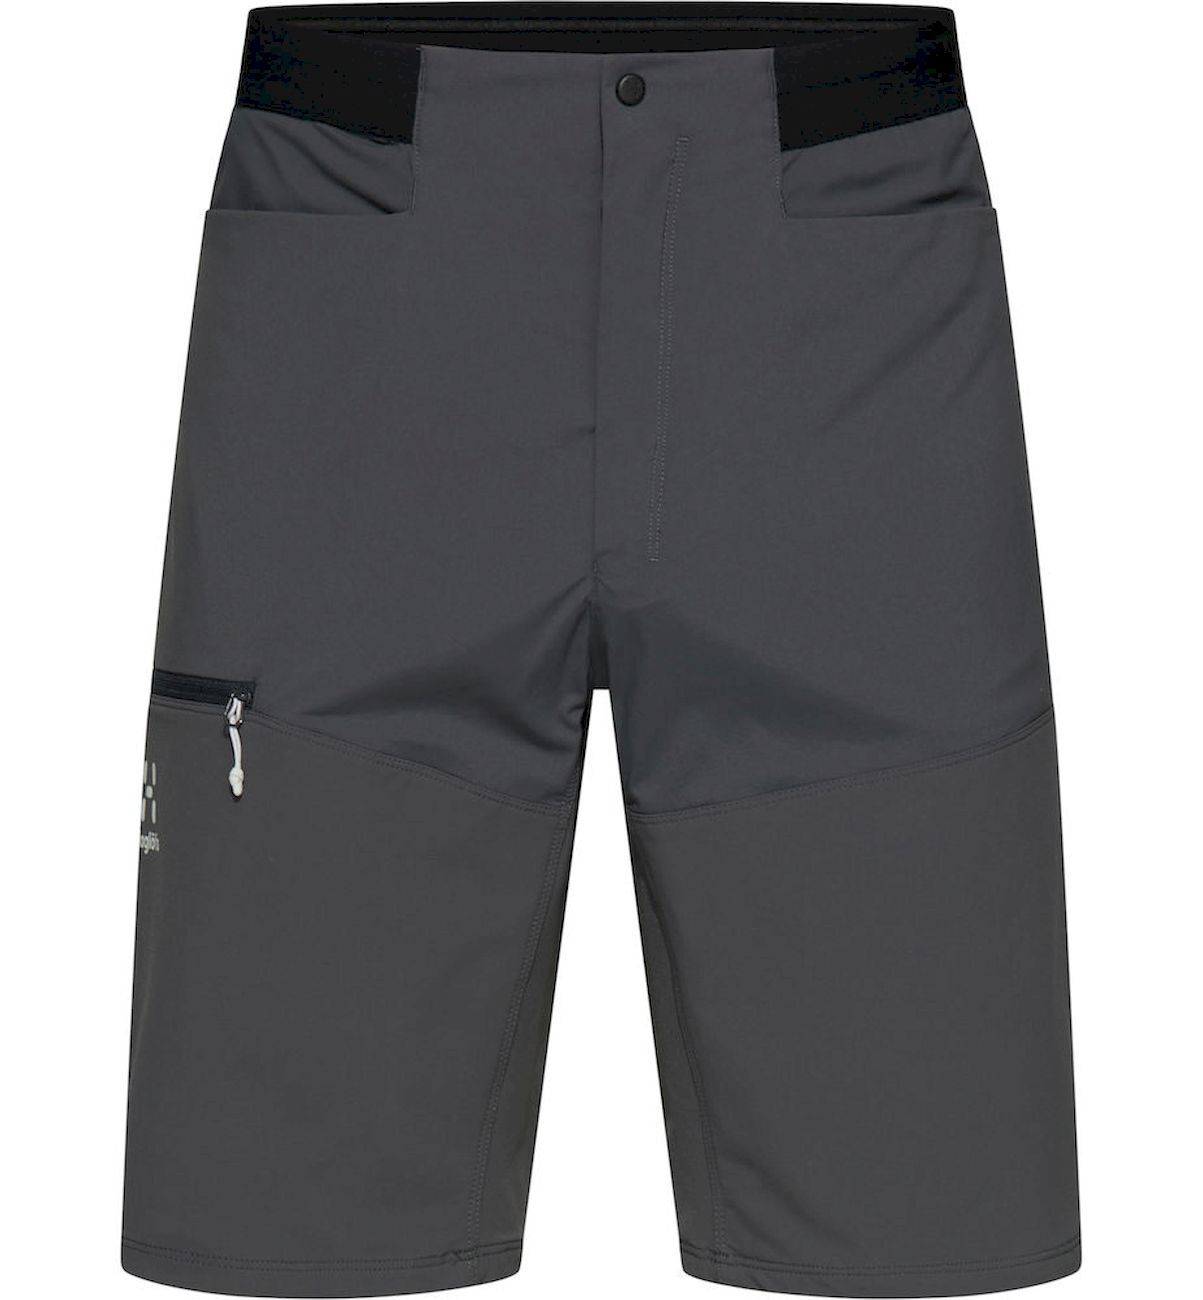 Haglöfs L.I.M Rugged Shorts - Pantalones cortos de trekking - Hombre